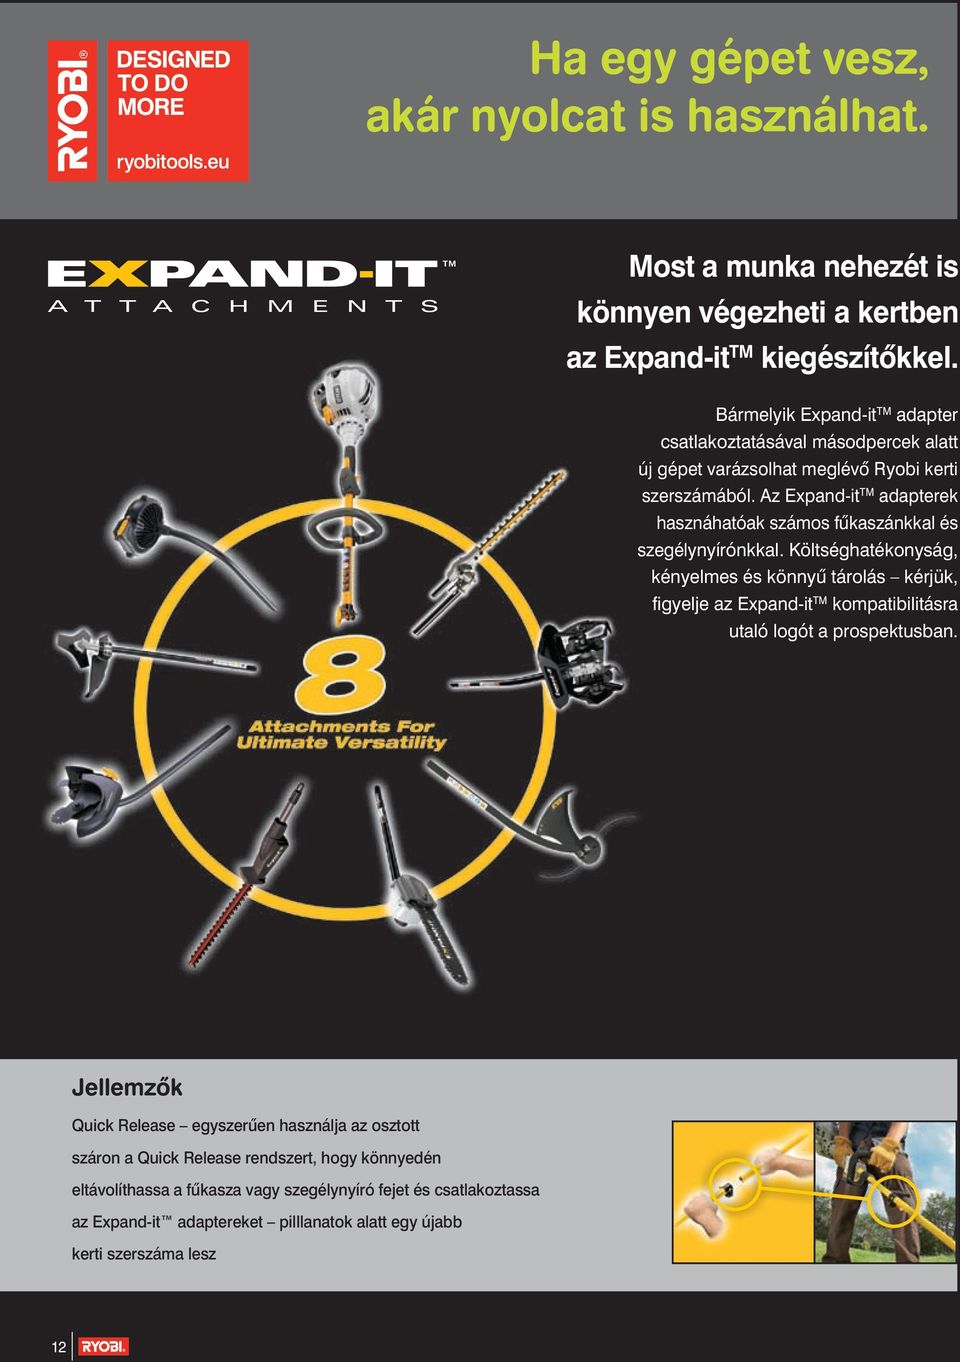 Az Expand-it adapterek hasznáhatóak számos fûkaszánkkal és szegélynyírónkkal.